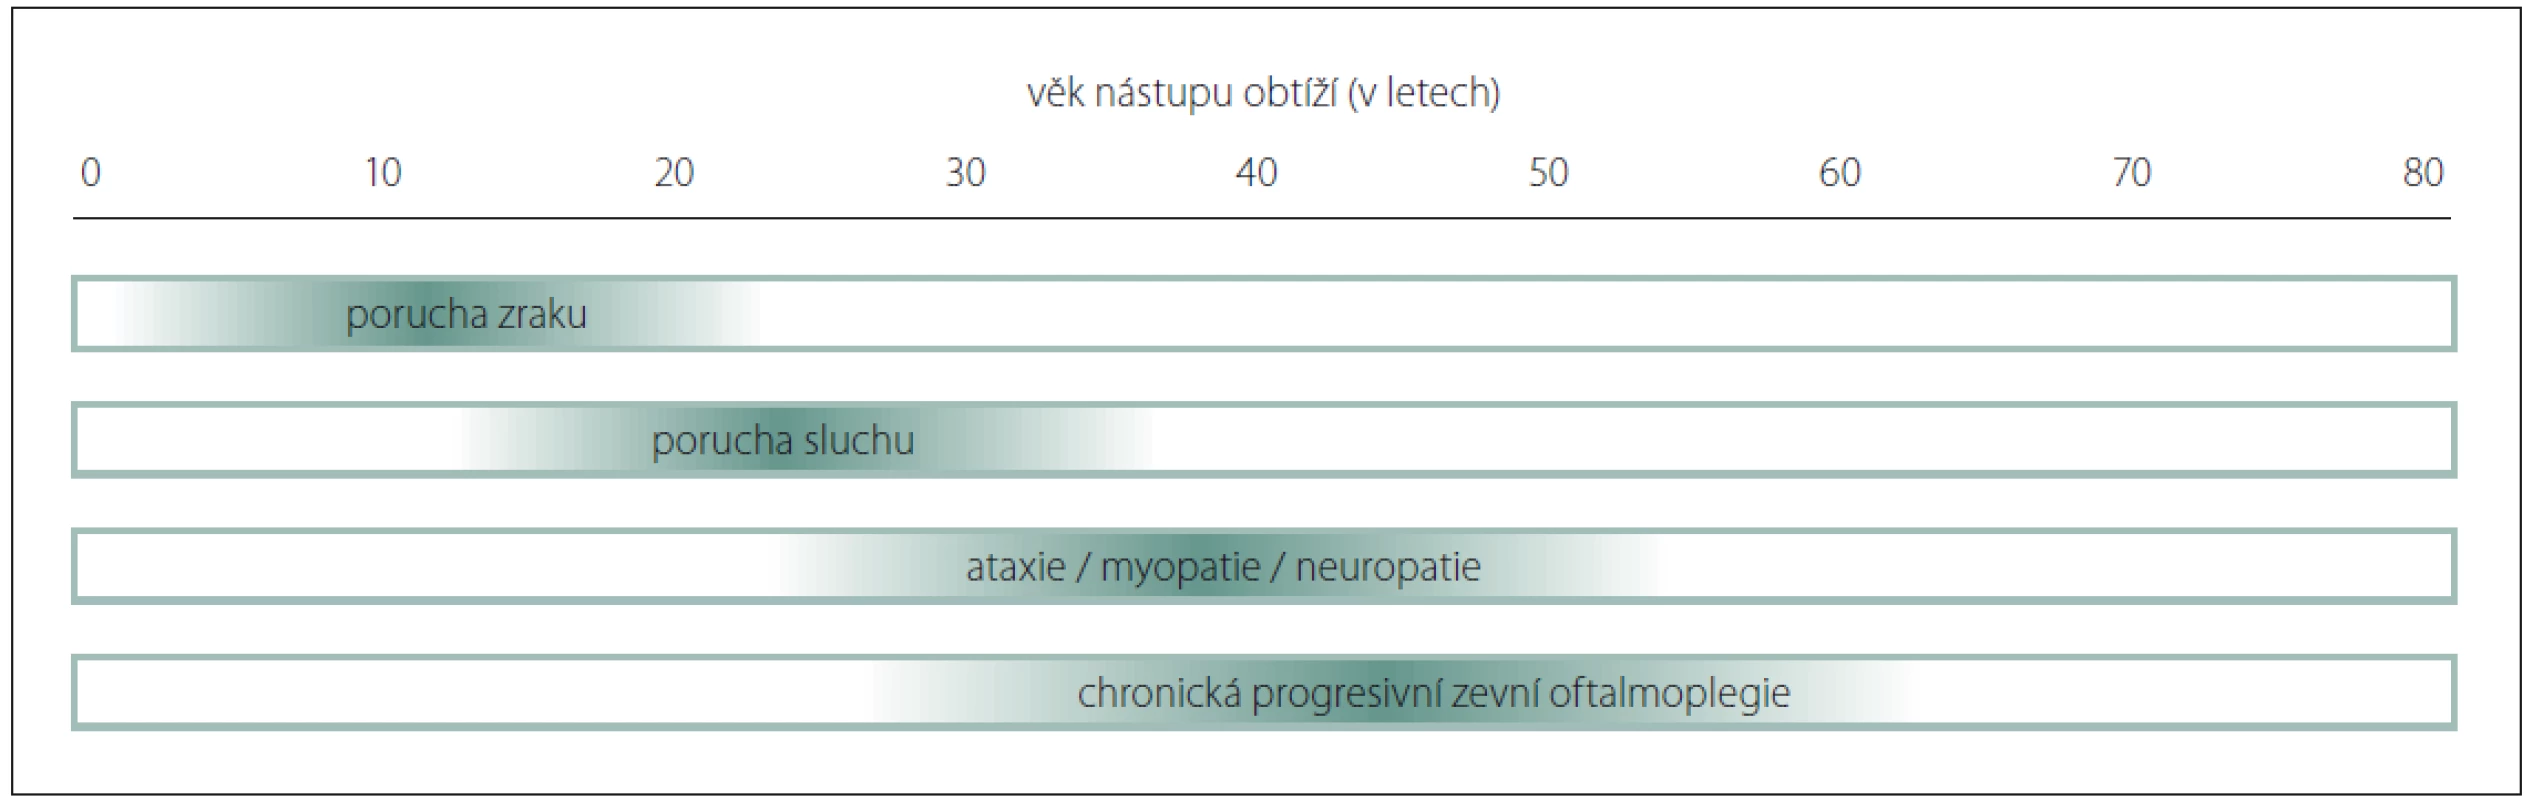 Vývoj hlavních symptomů dominantní atrofi e optiku plus syndromu [32].<br>
Fig. 2. Evolution of the main symptoms of dominant optic atrophy plus syndrome [32].